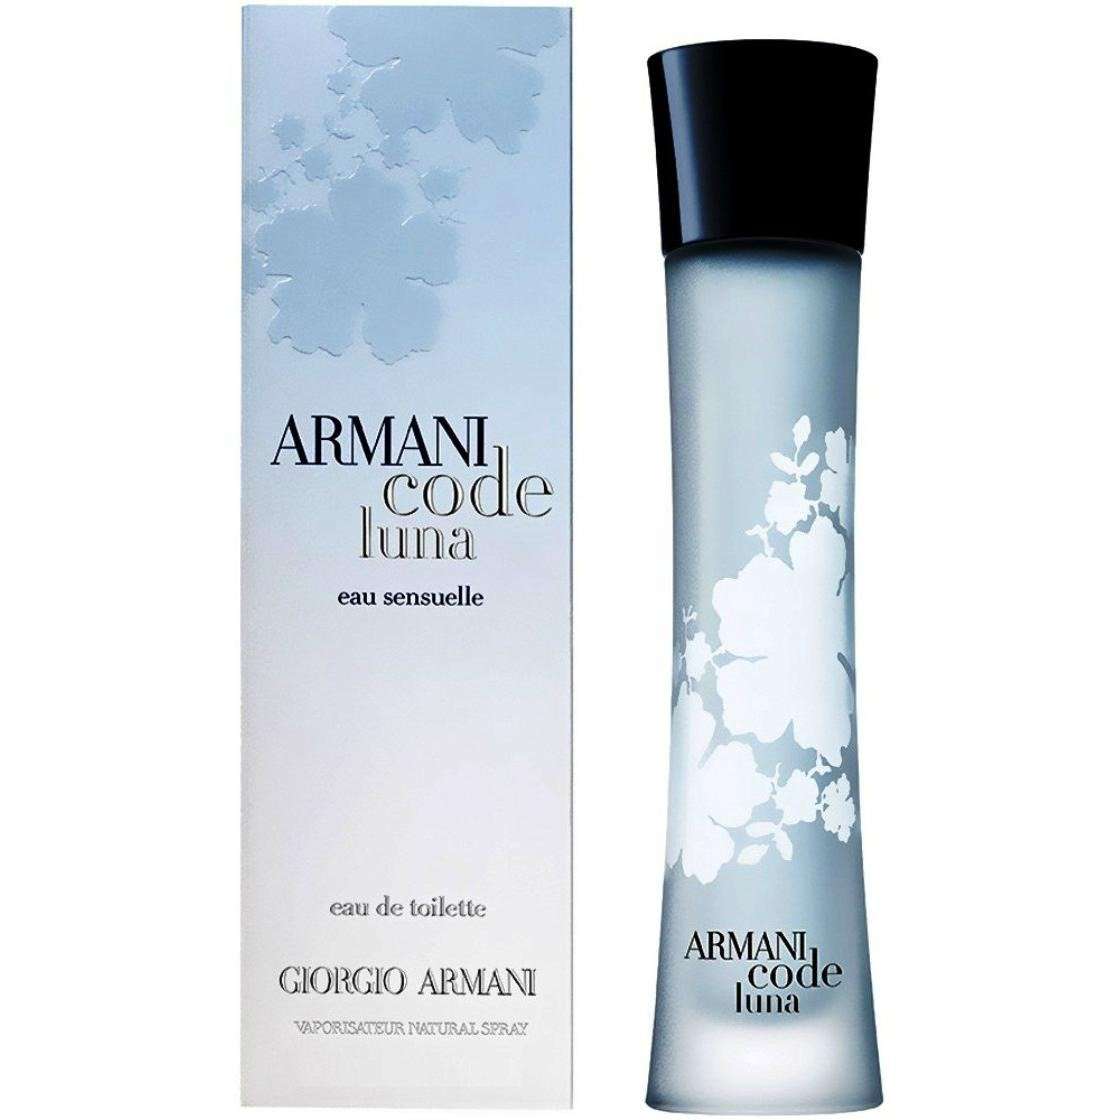 armani code perfume price in usa